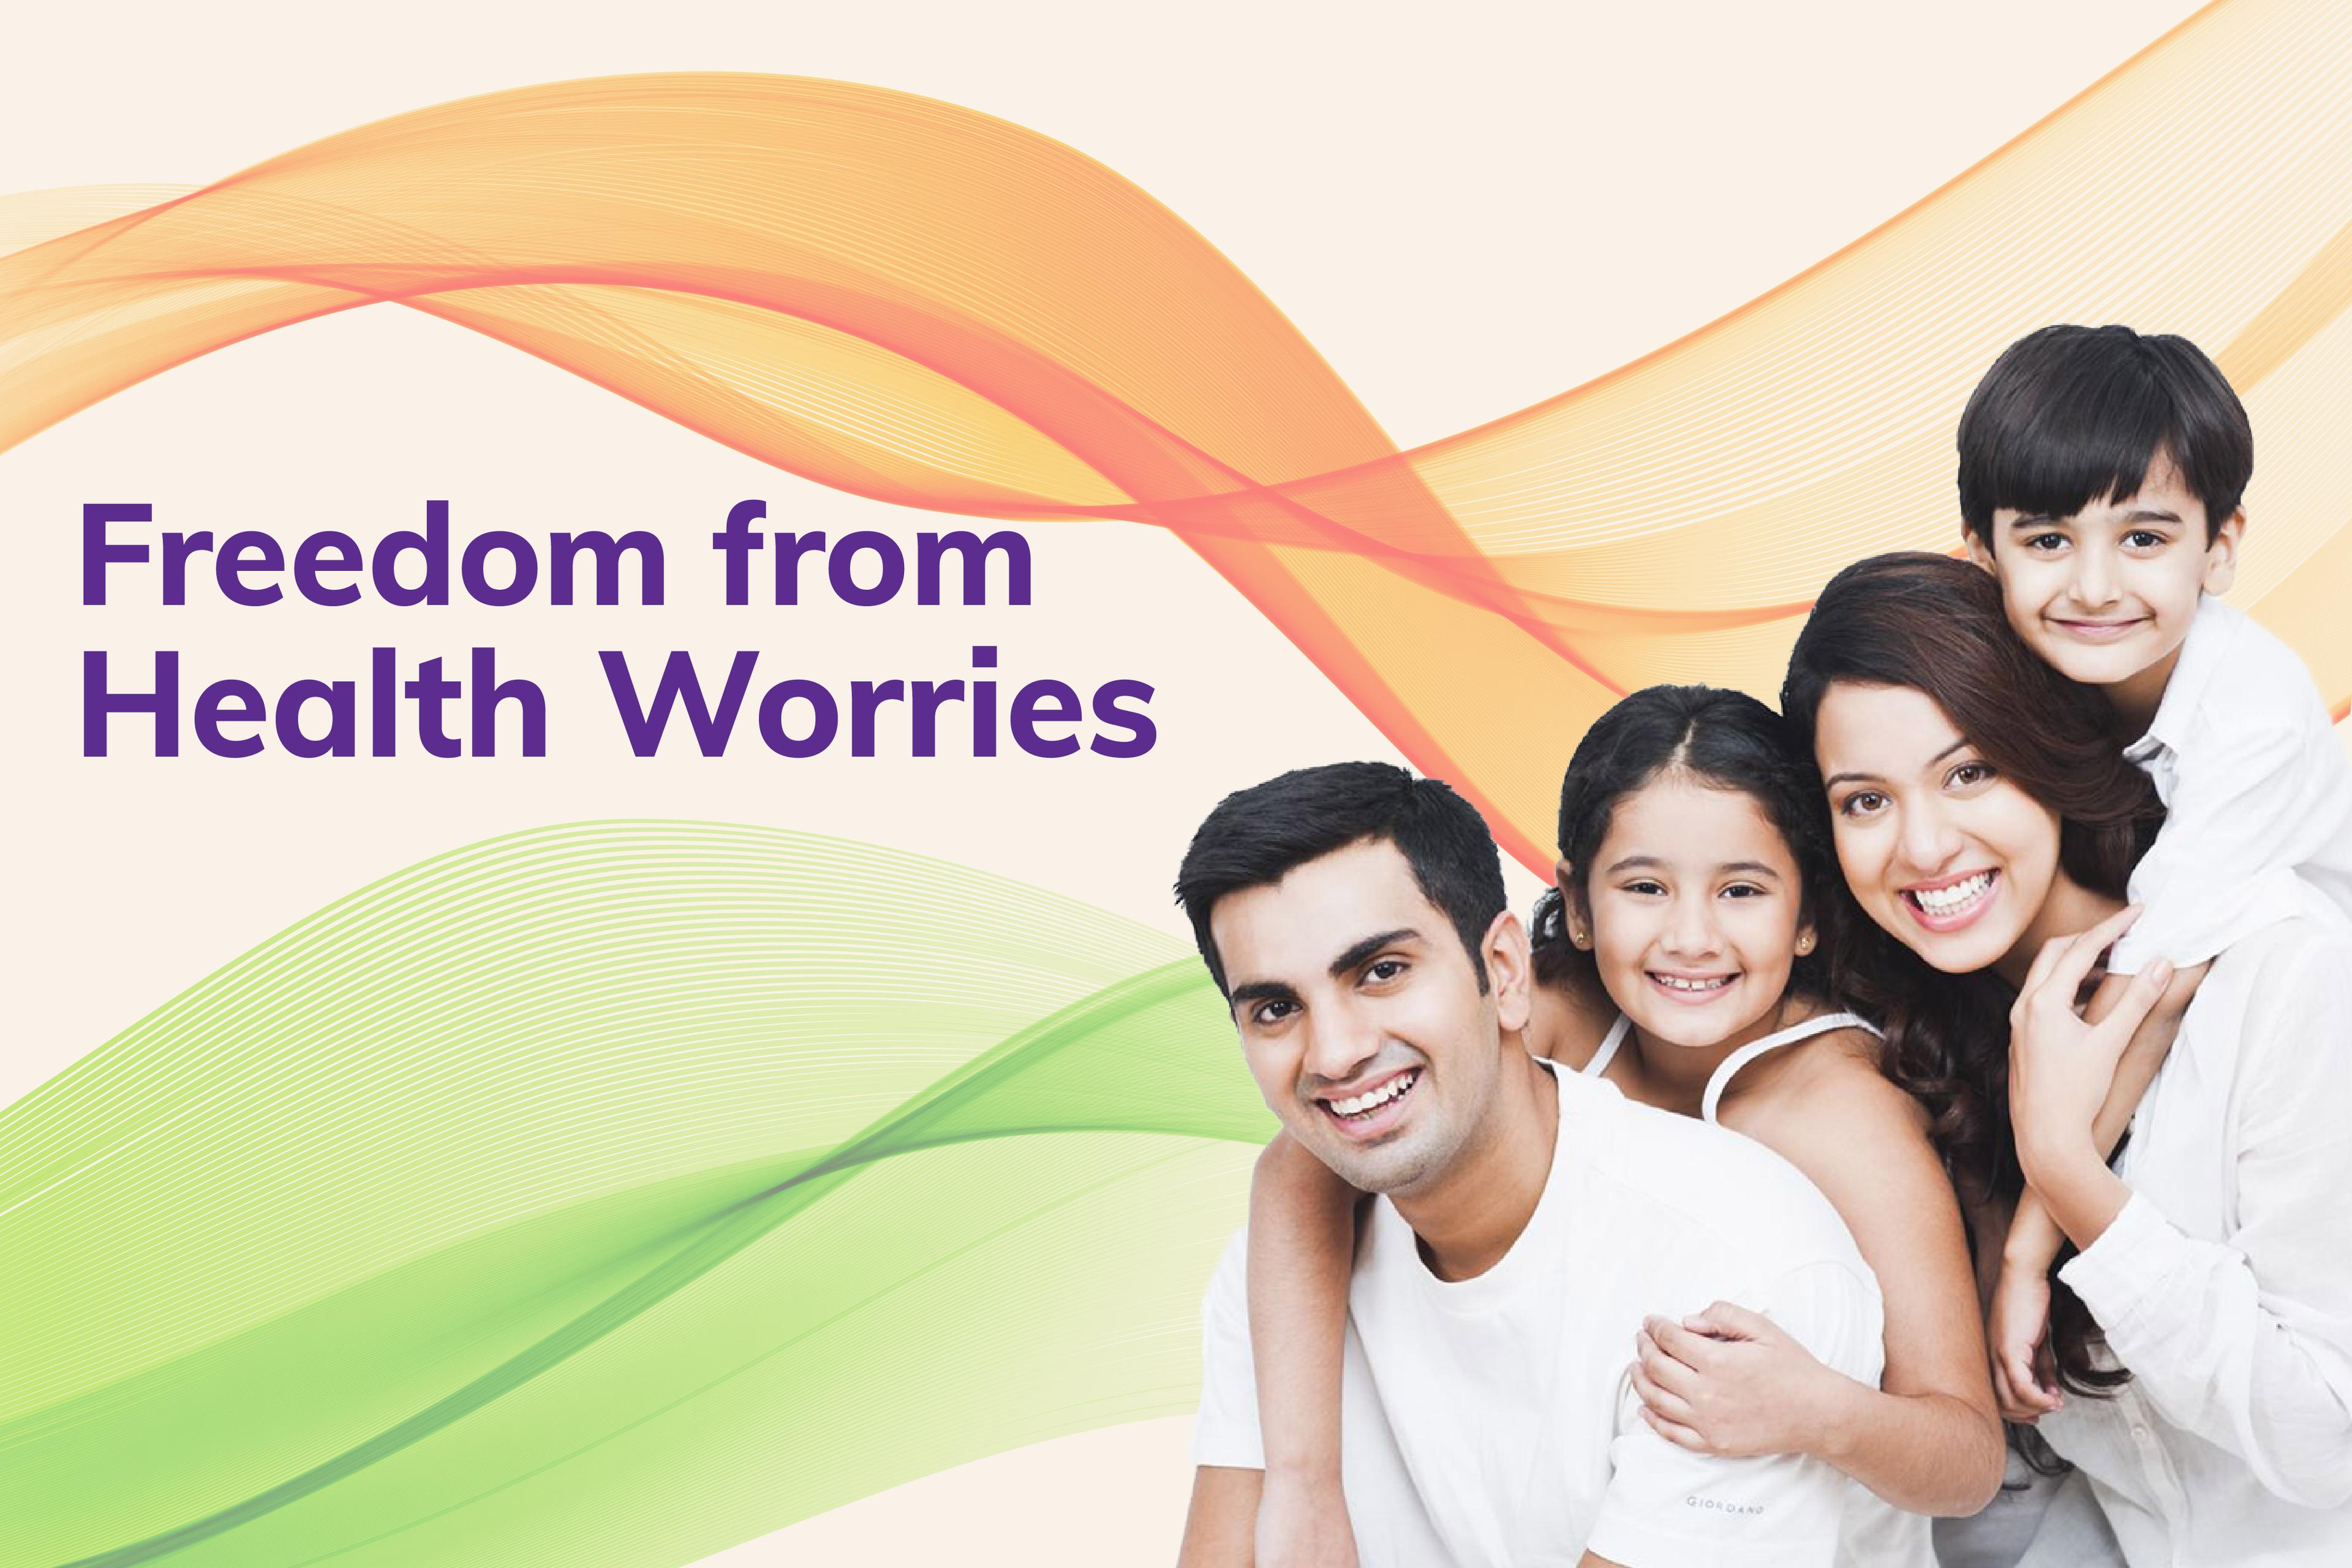 इस स्वतंत्रता दिवस को स्वास्थ्य संबंधी चिंताओं से मुक्ति के साथ मनाएं